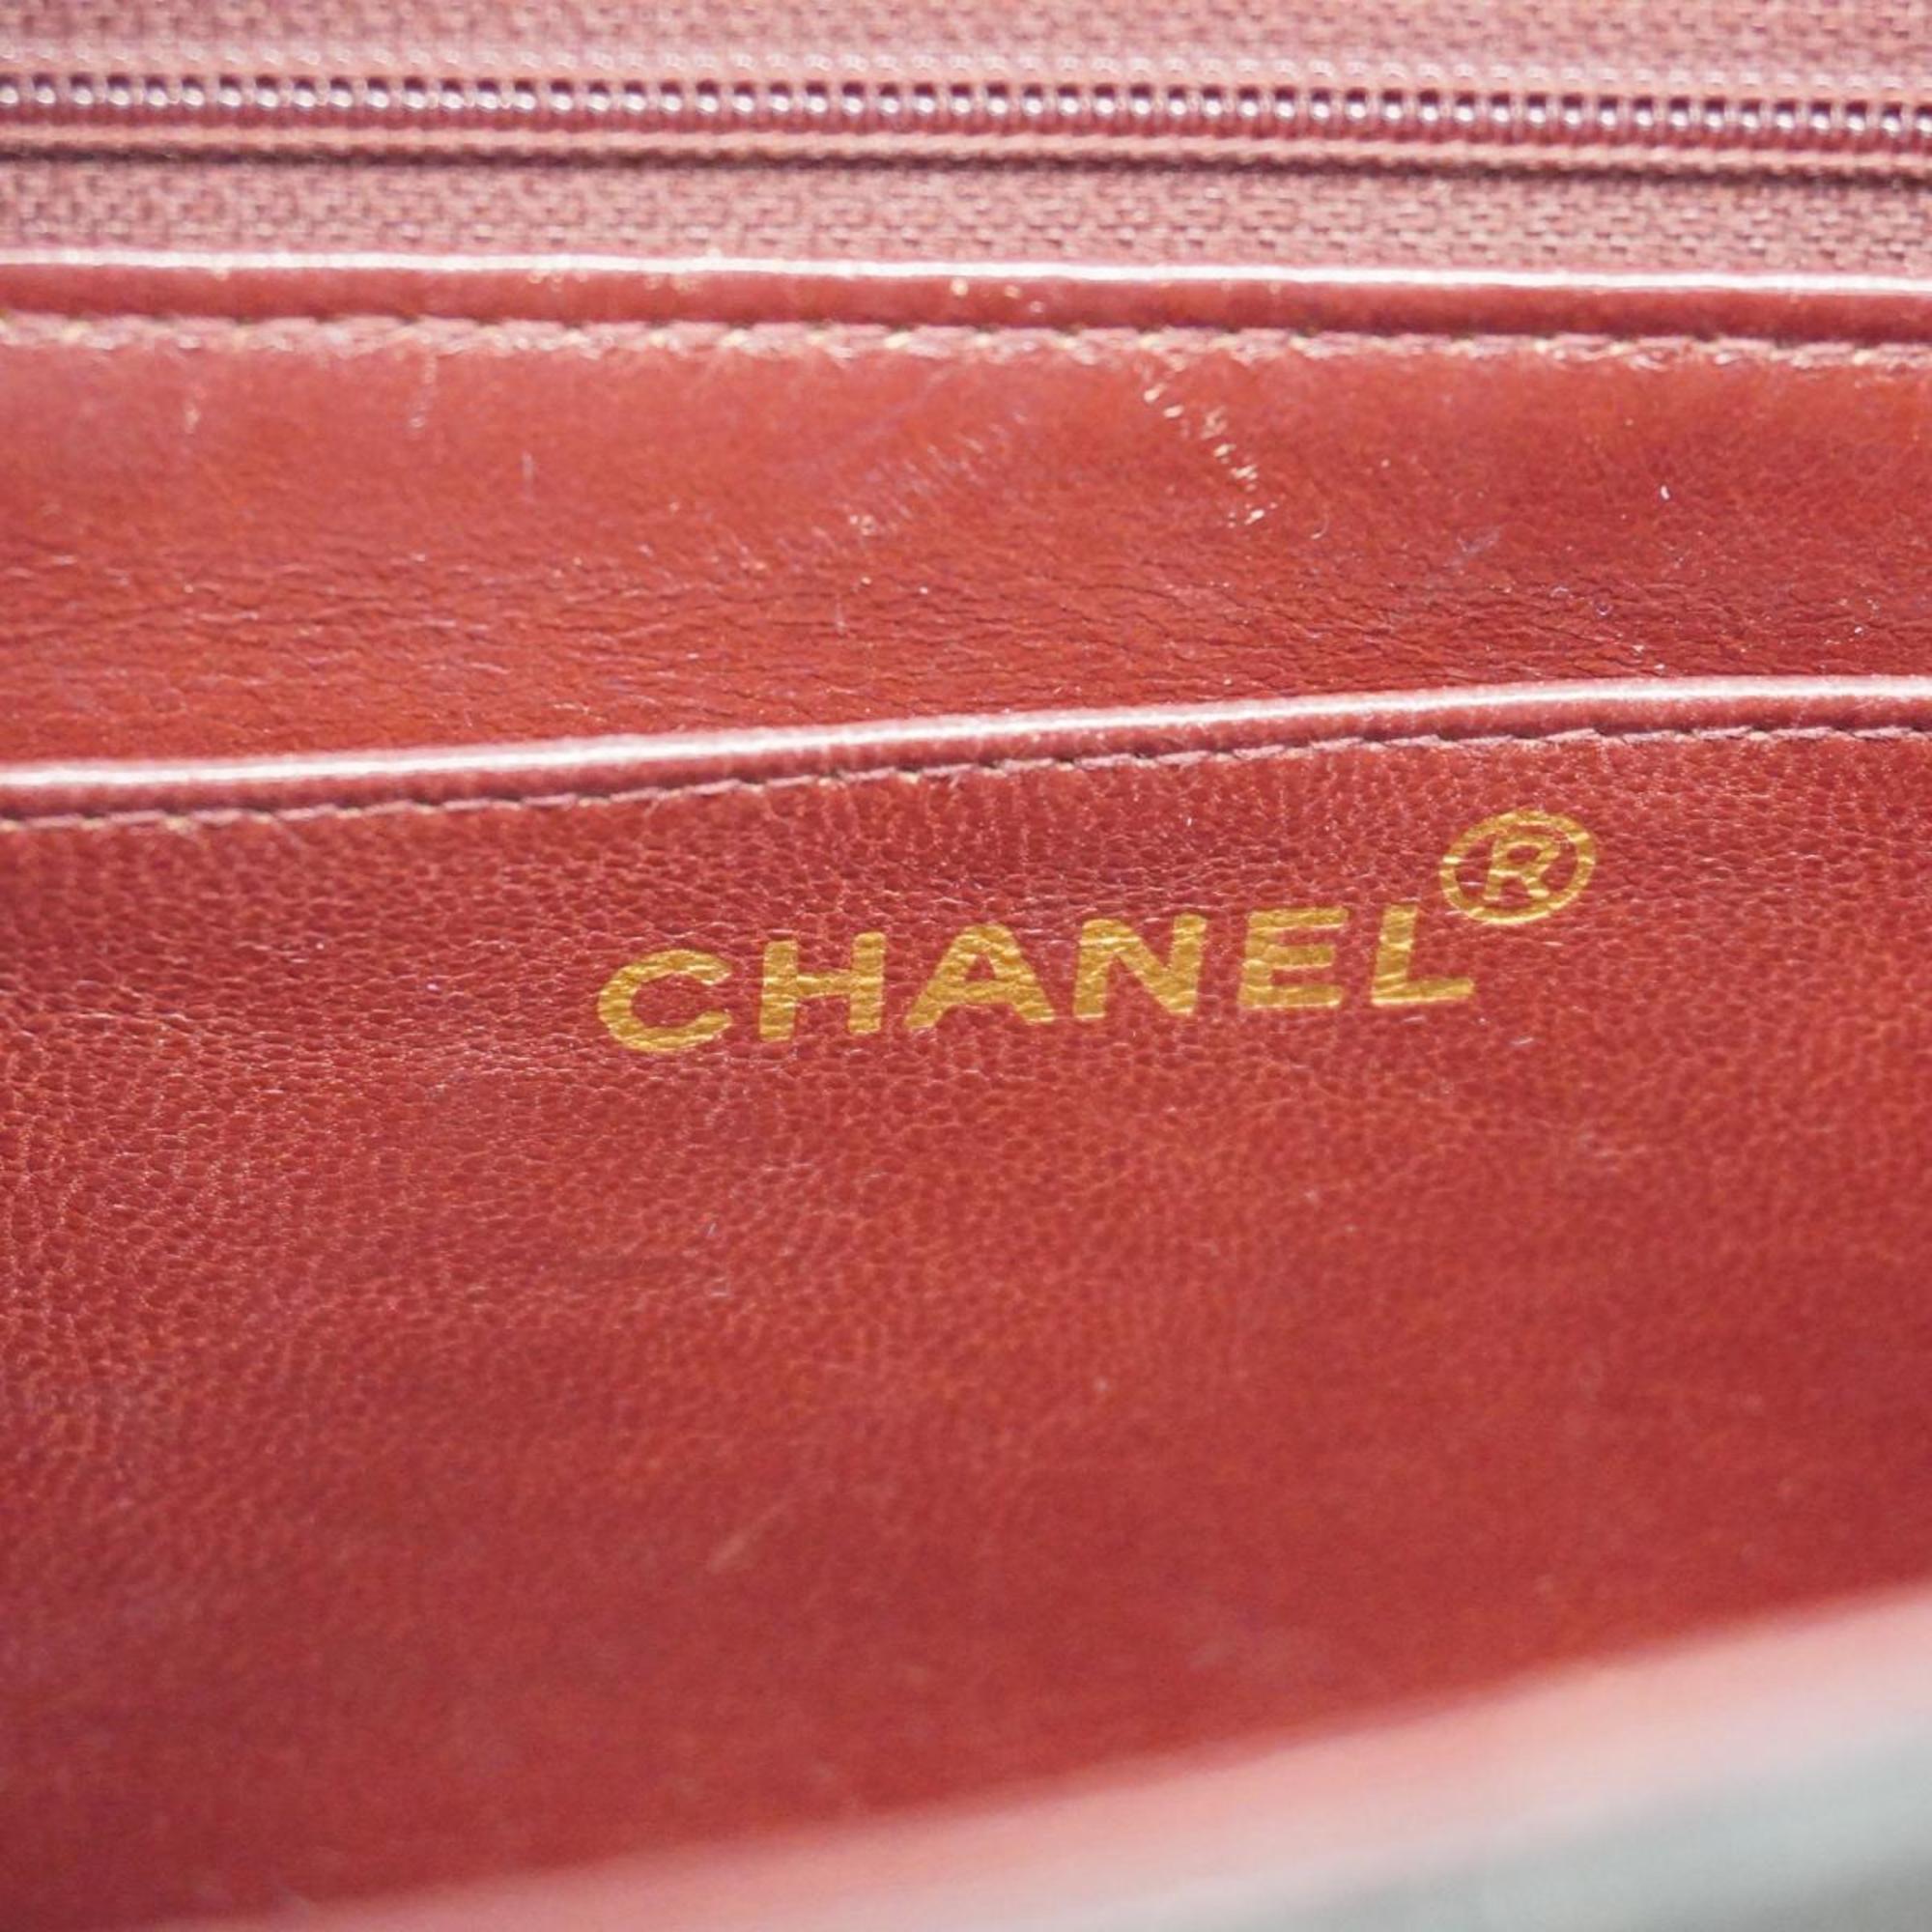 シャネル(Chanel) シャネル ショルダーバッグ Vステッチ ラムスキン ブラック   レディース